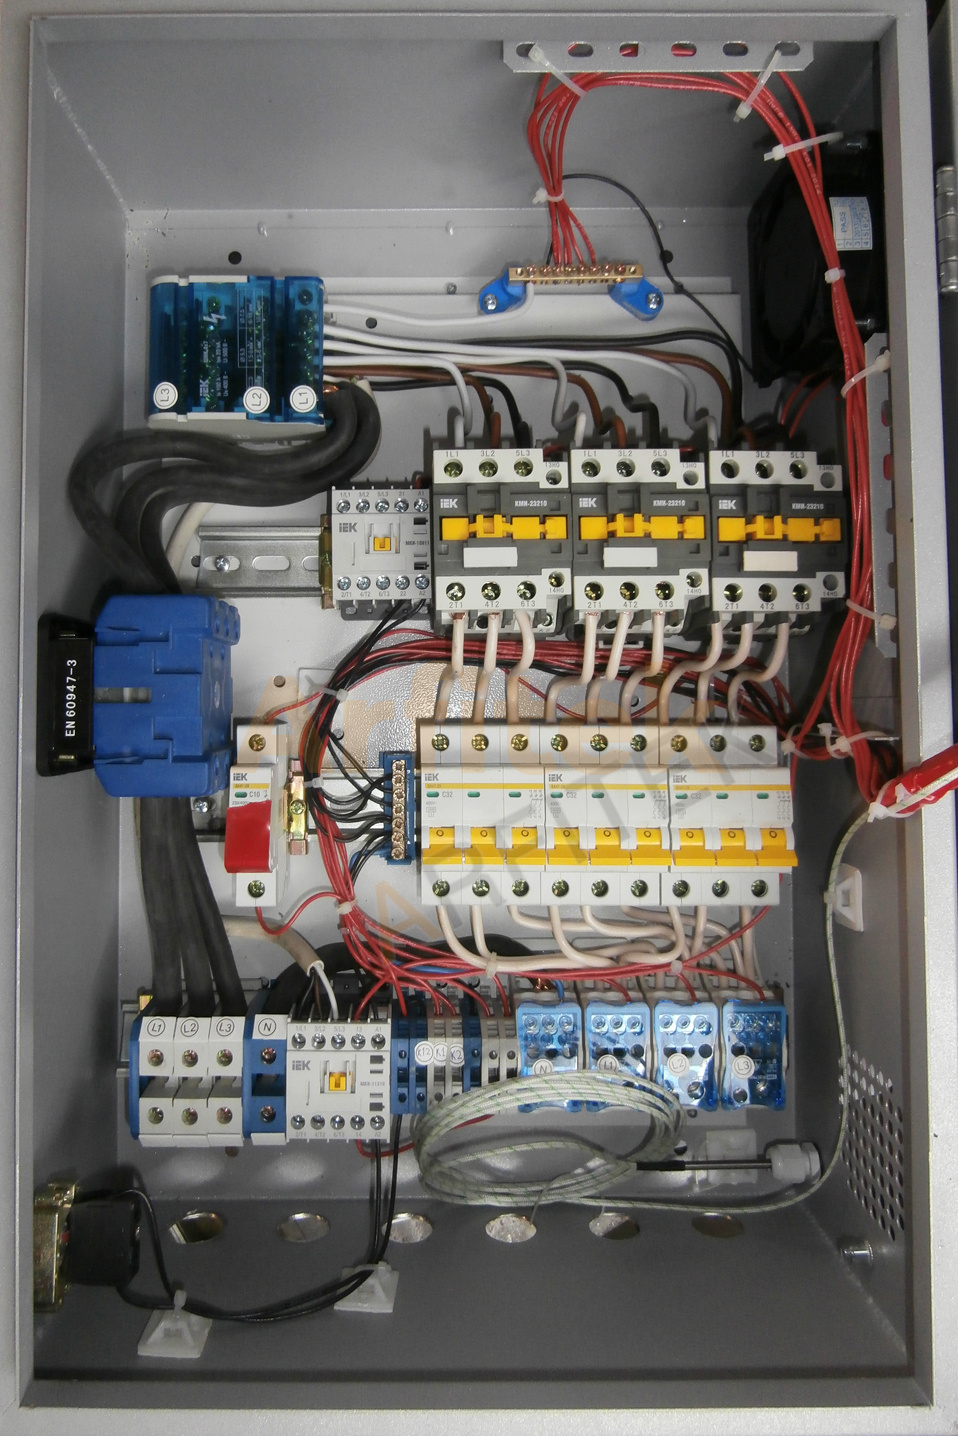 Блок управления для печи мощностью 40 кВт (2-х позиционное регулирование), с управлением конвейером и открытием/закрытием дверей, запуском цикла по сигналам концевых датчиков